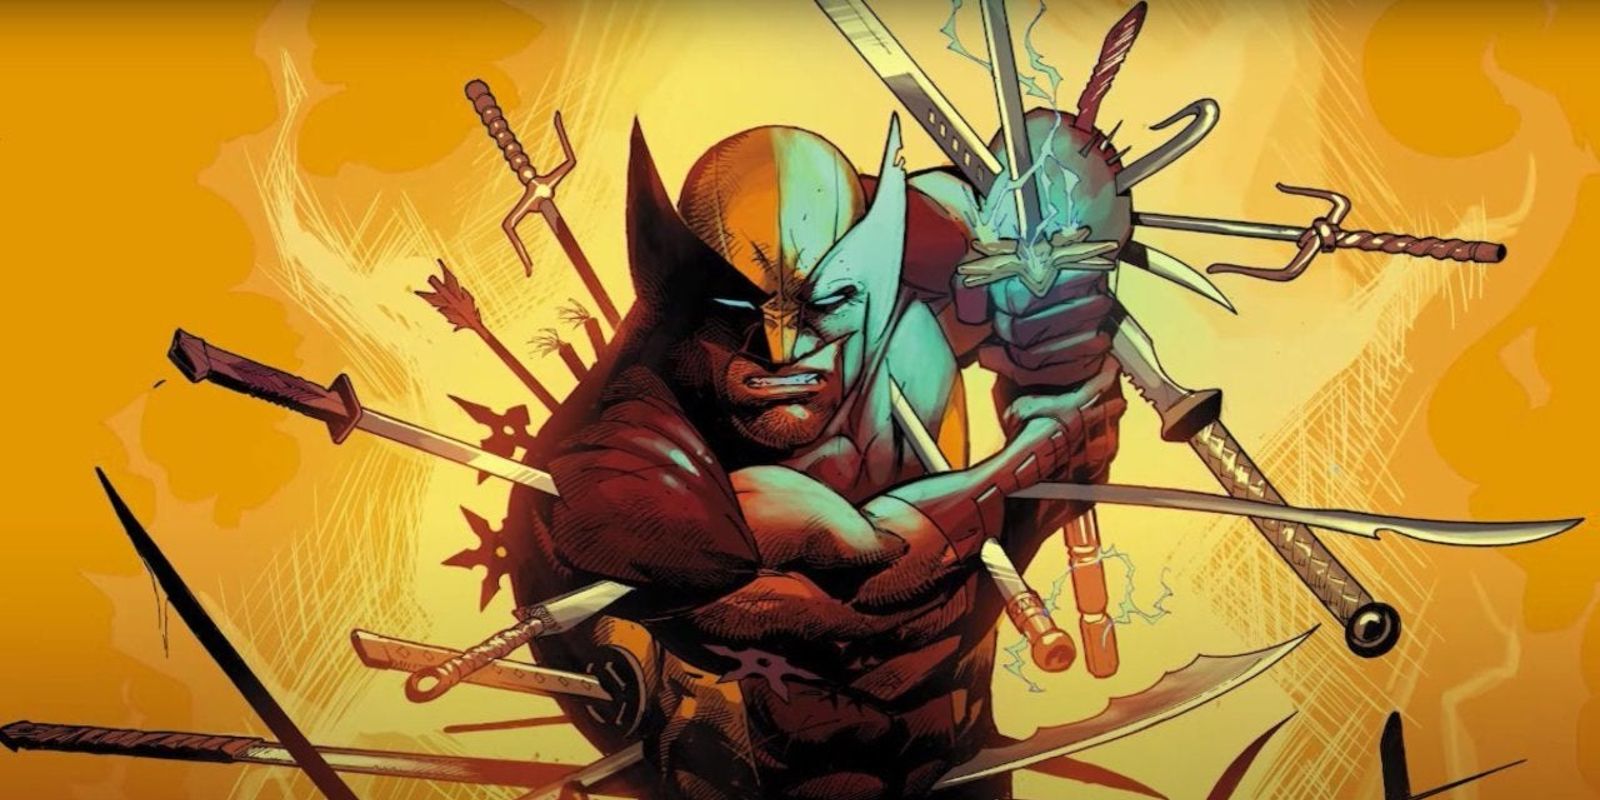 Wolverine memegang pedang sambil ditusuk dengan senjata lain di komik Marvel.